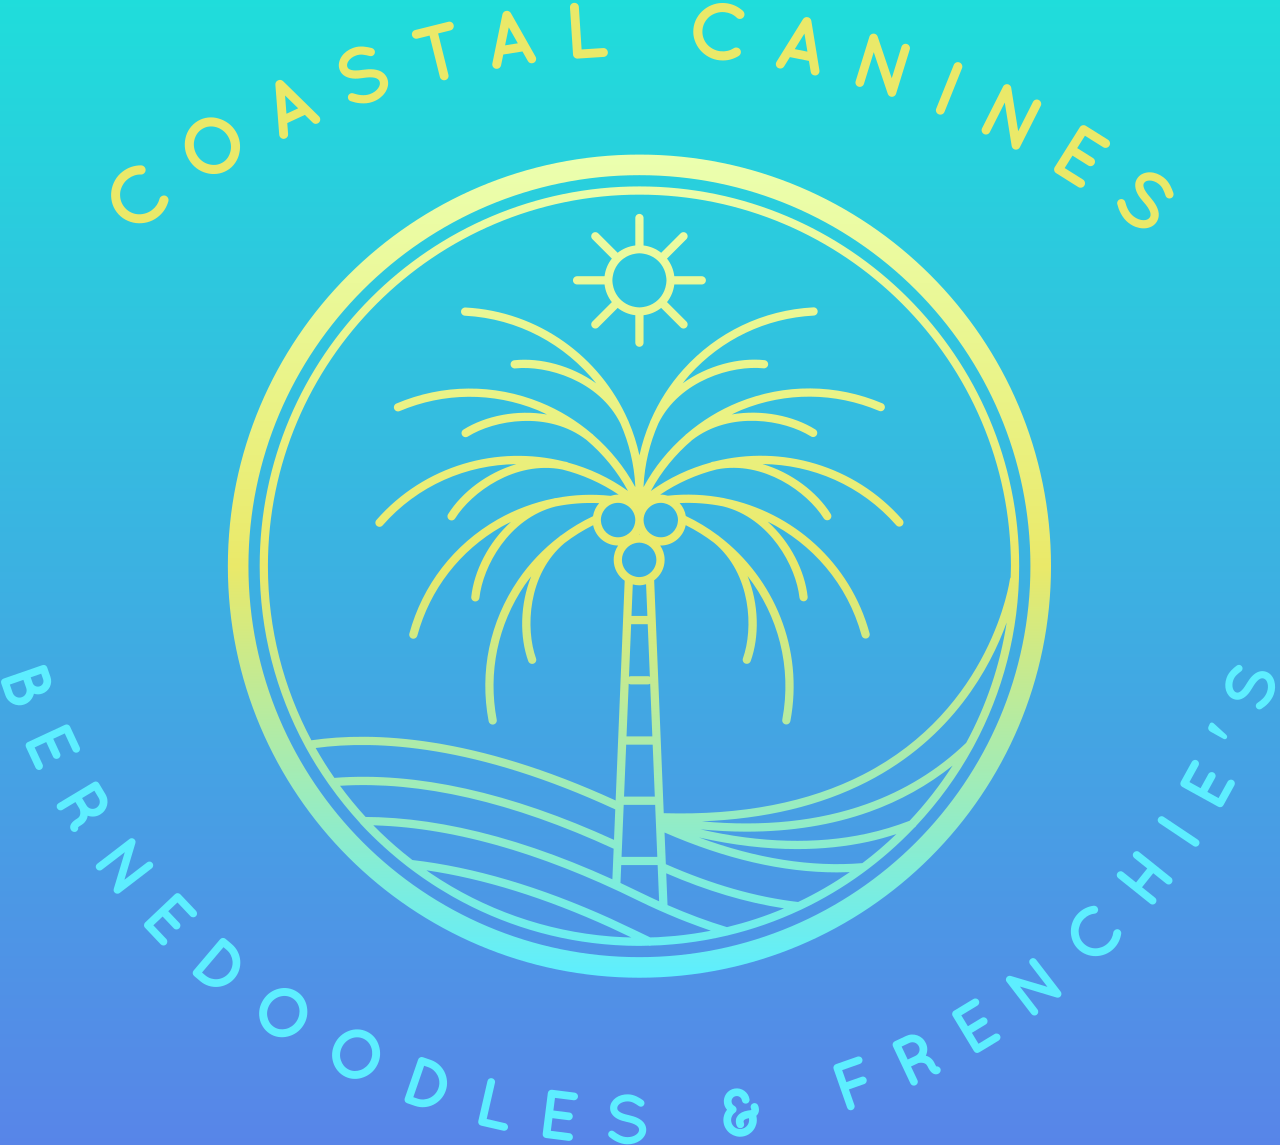 COASTAL CANINES's logo